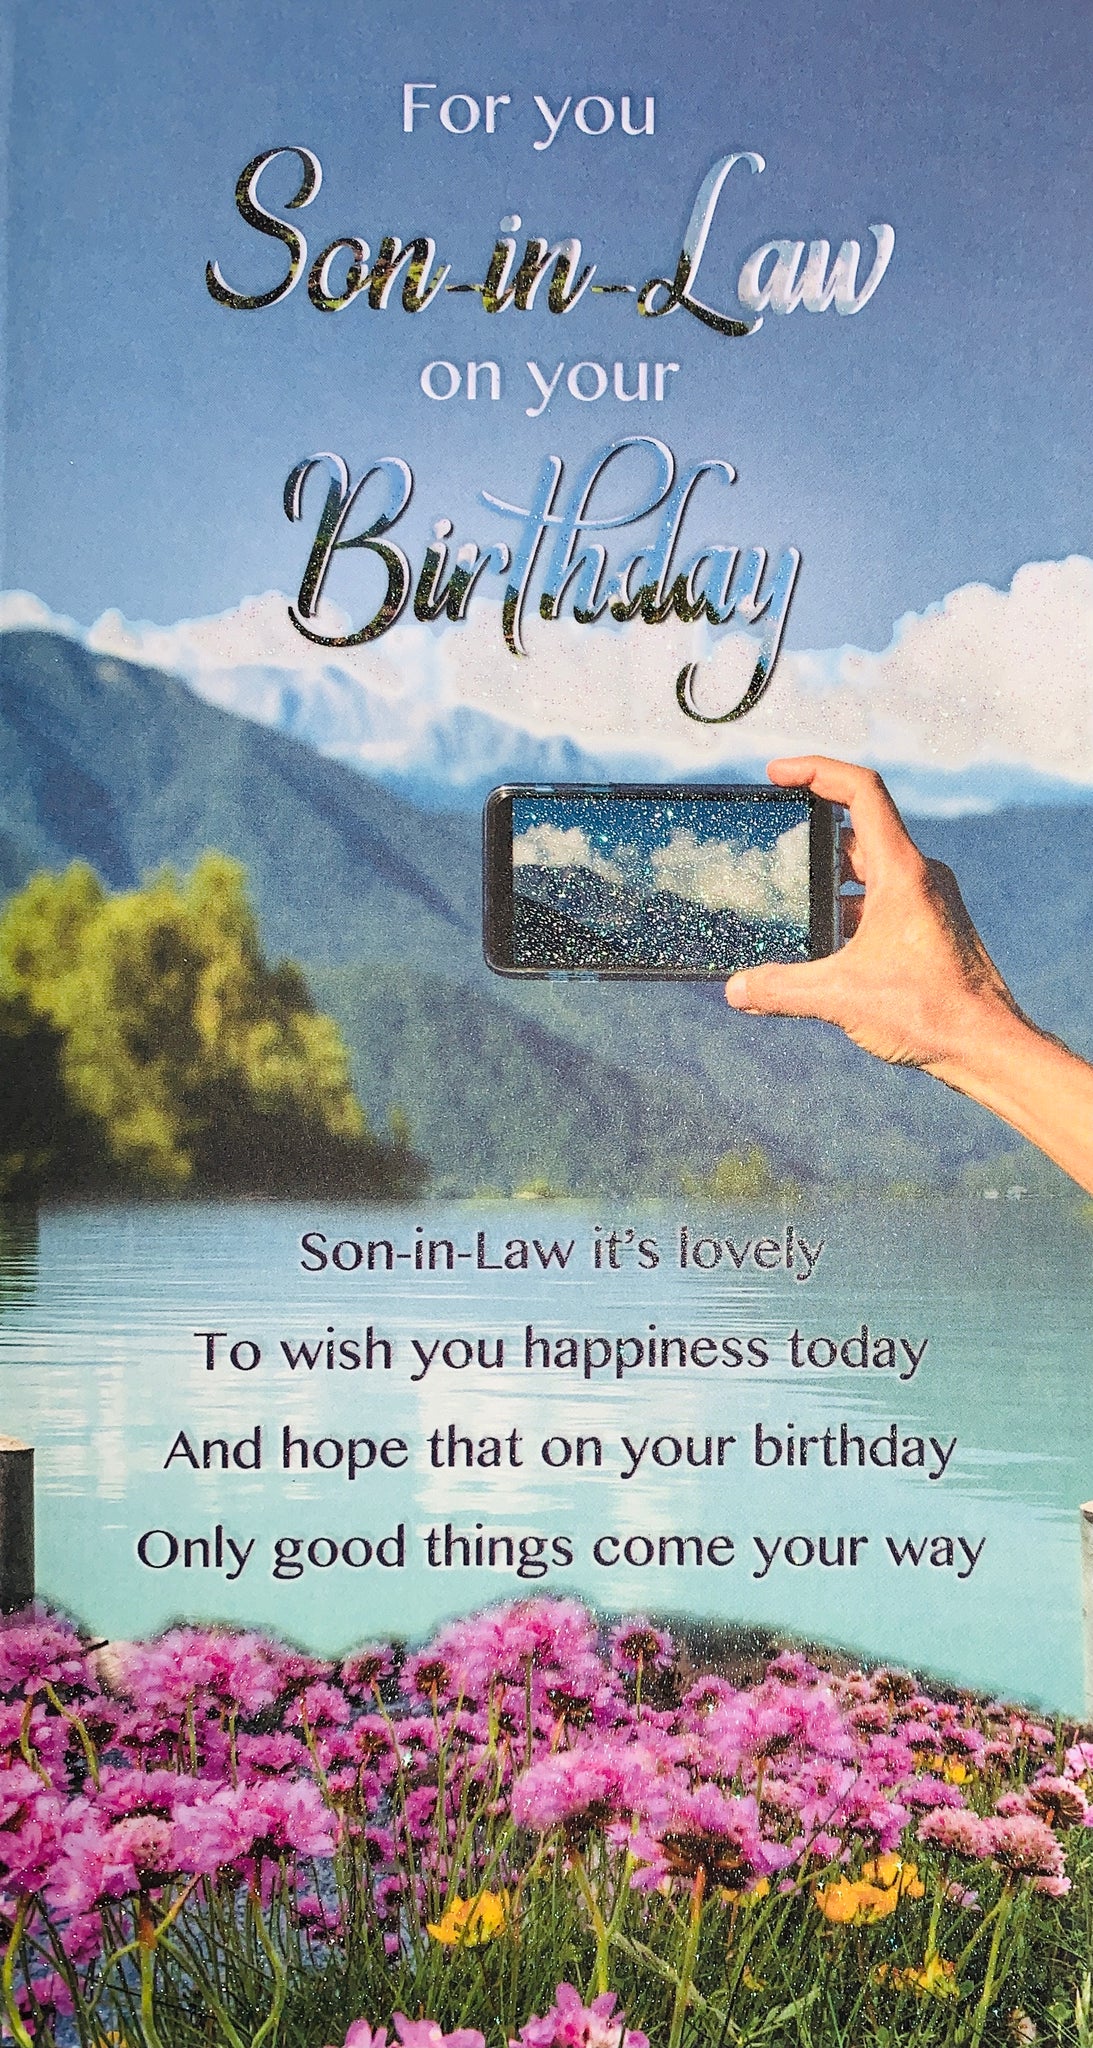 Son-in-law birthday card